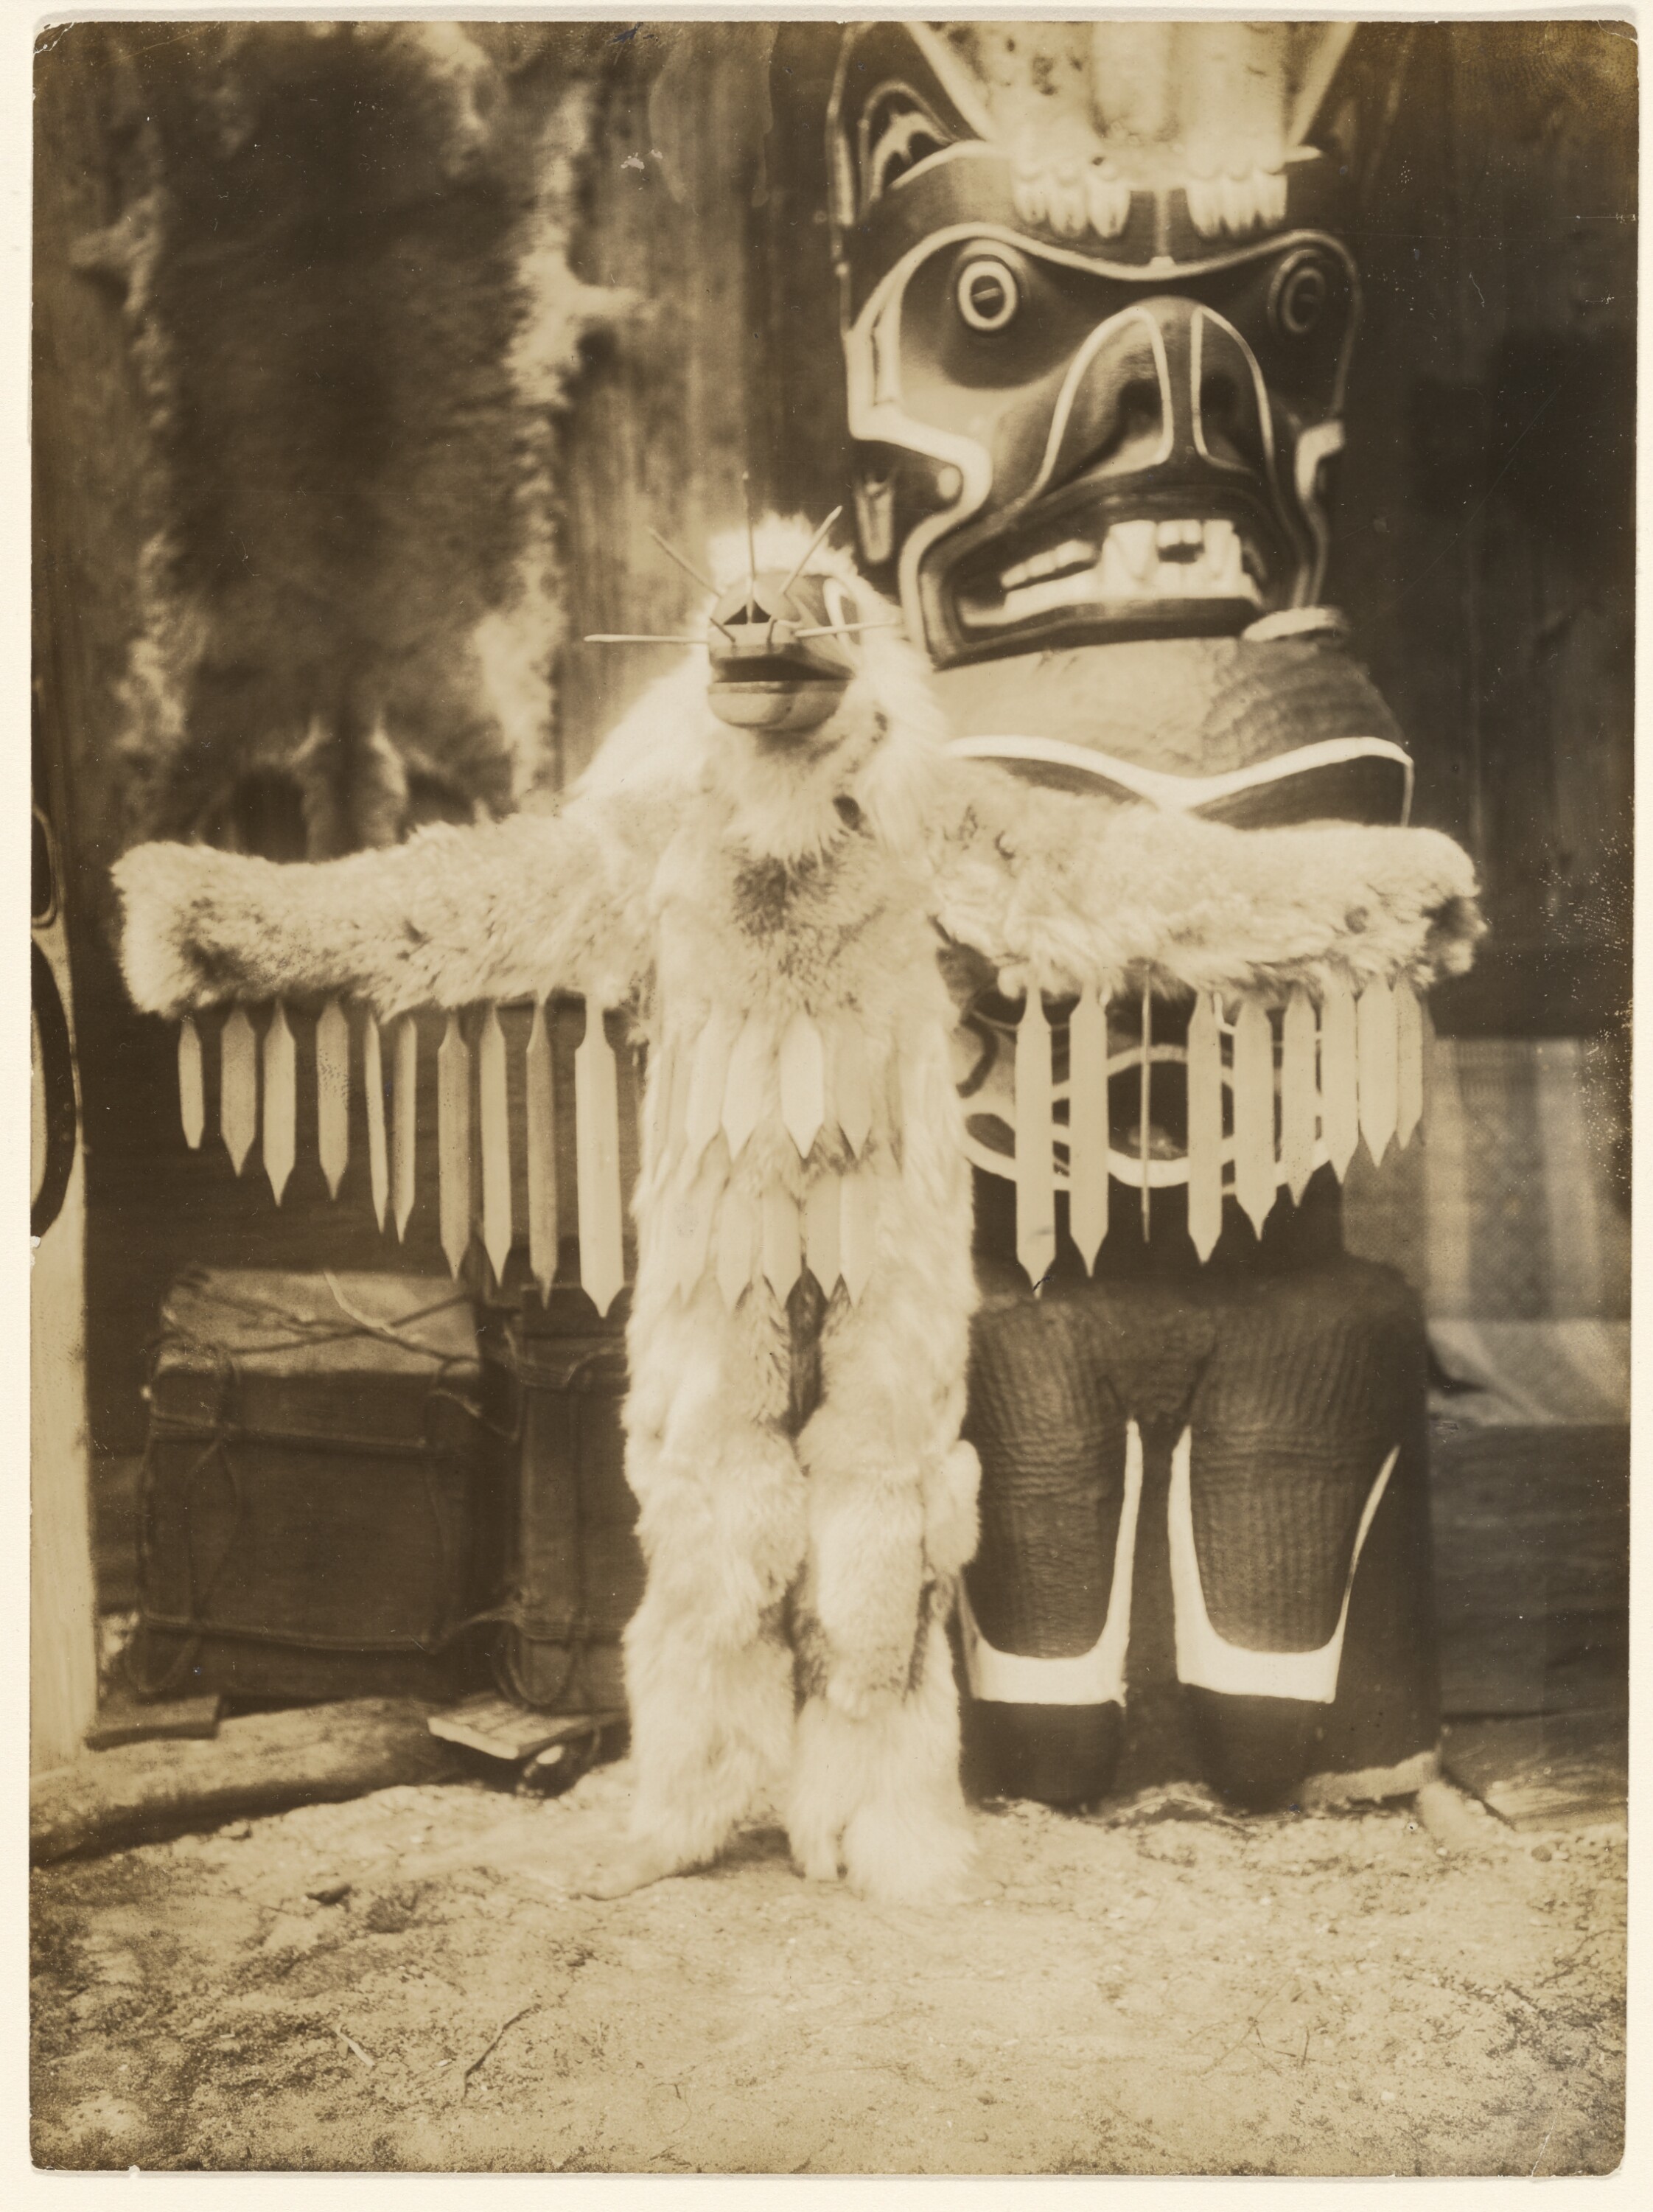 Edward Curtis, "A vespa com seu zumbido vai espantar todos", homem Kwakiutl vestido de animal em frente a um totem c. 1910–14. Fotografia. The J. Paul Getty Museum, Los Angeles, 84.XM.638.49. Domínio público.